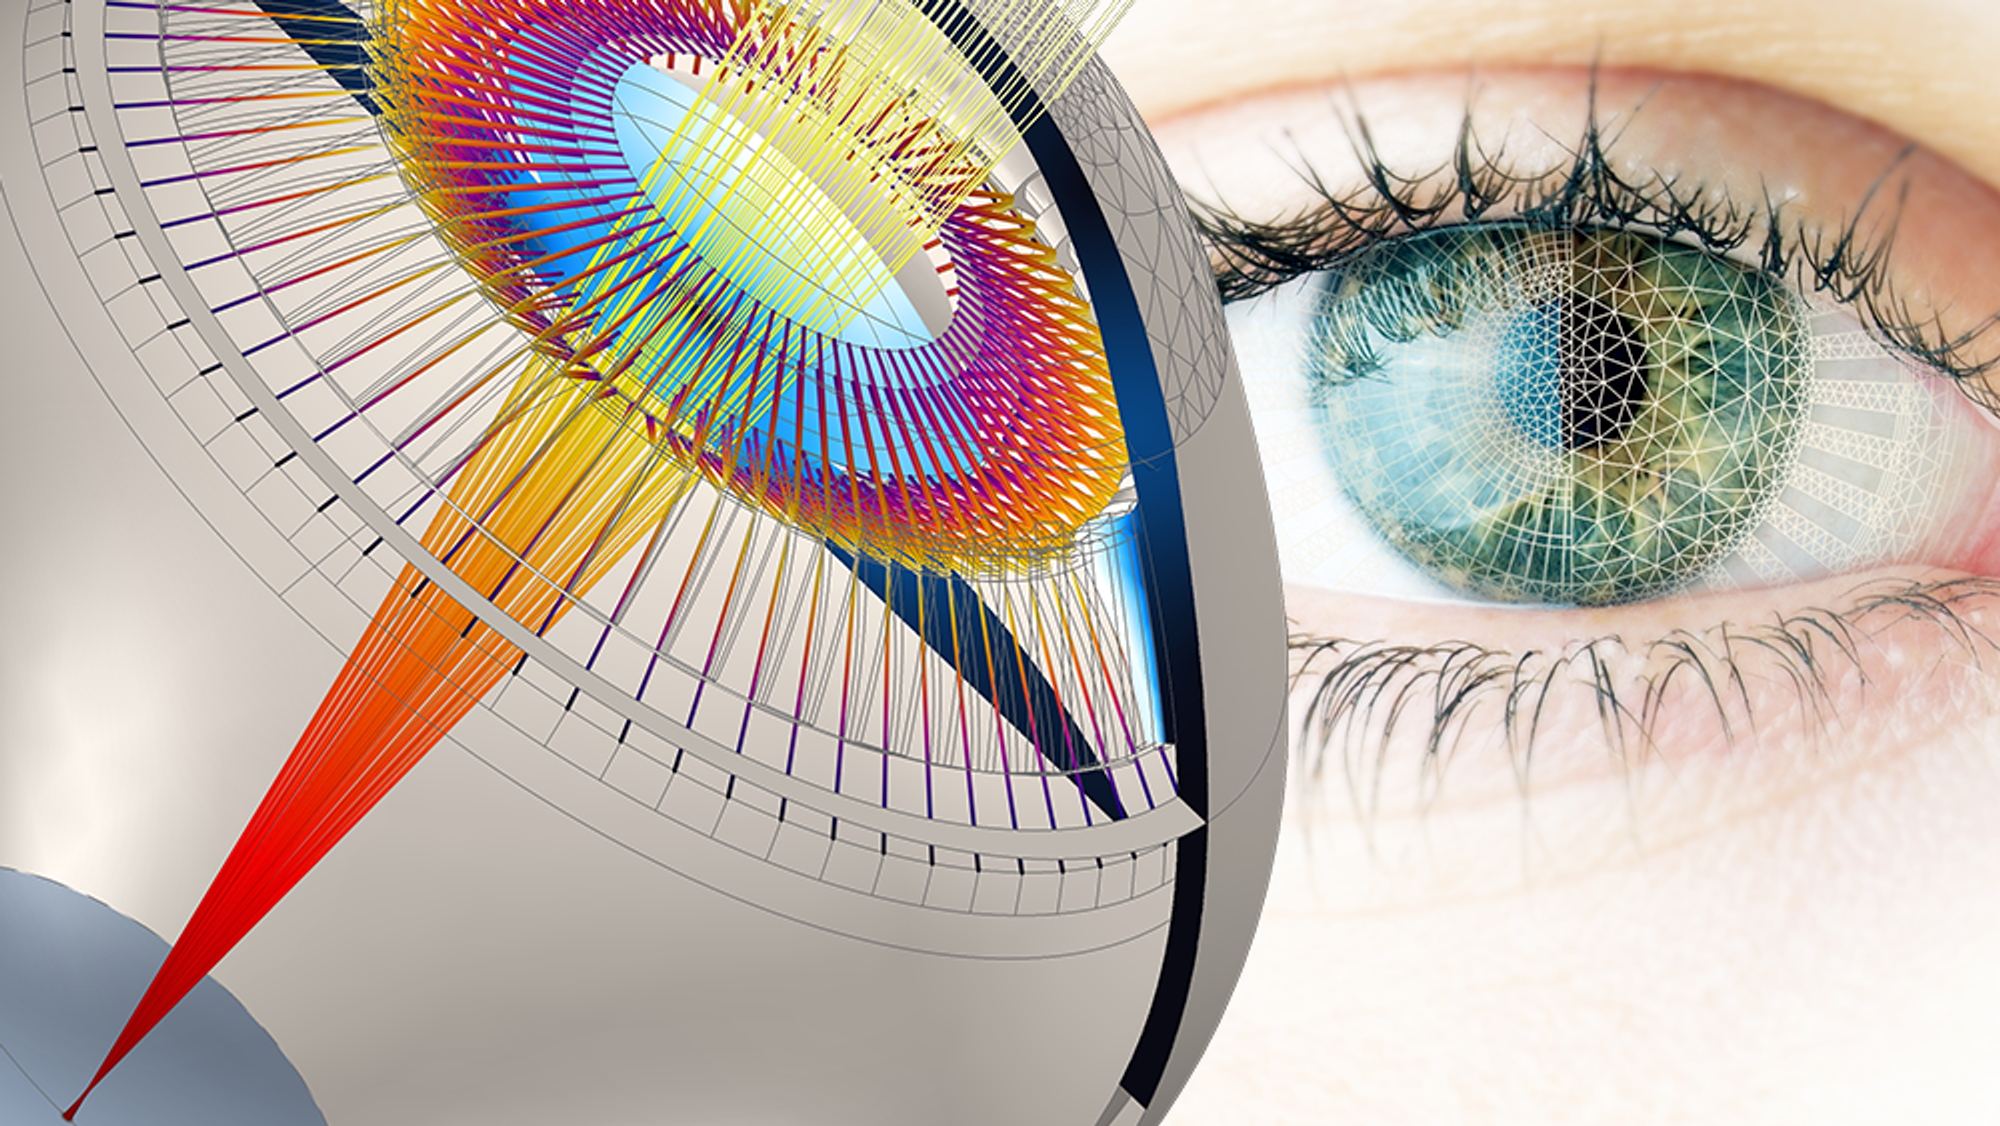 3D-modell av øyet kan utsette behovet for lesebriller med minst 20 år